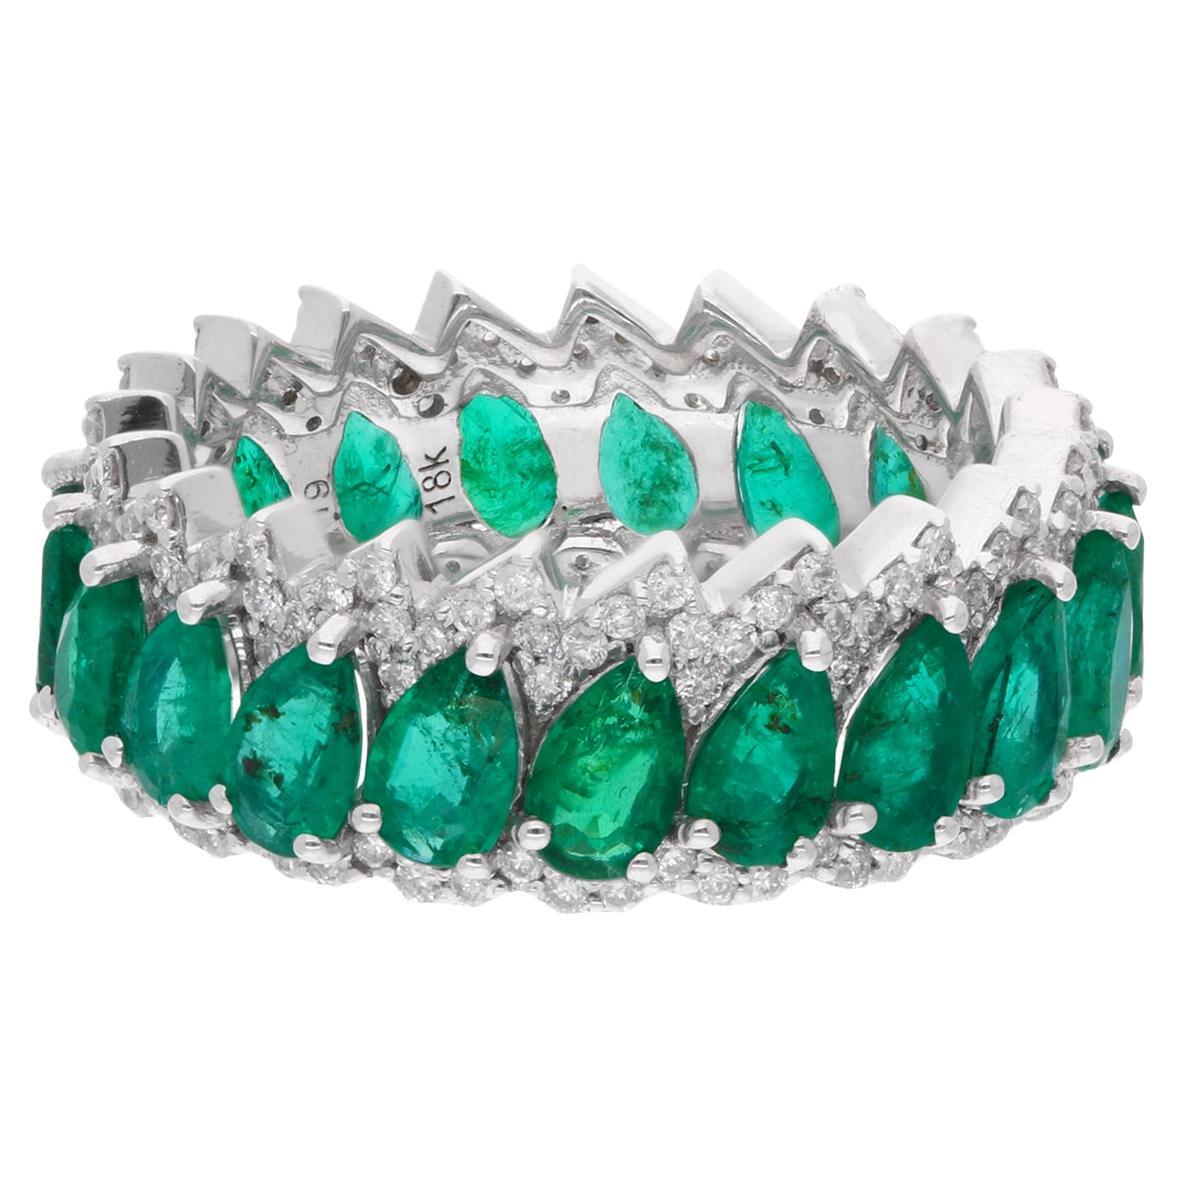 Pear Zambian Emerald Gemstone Band Ring Diamond 18 Karat White Gold Fine Jewelry